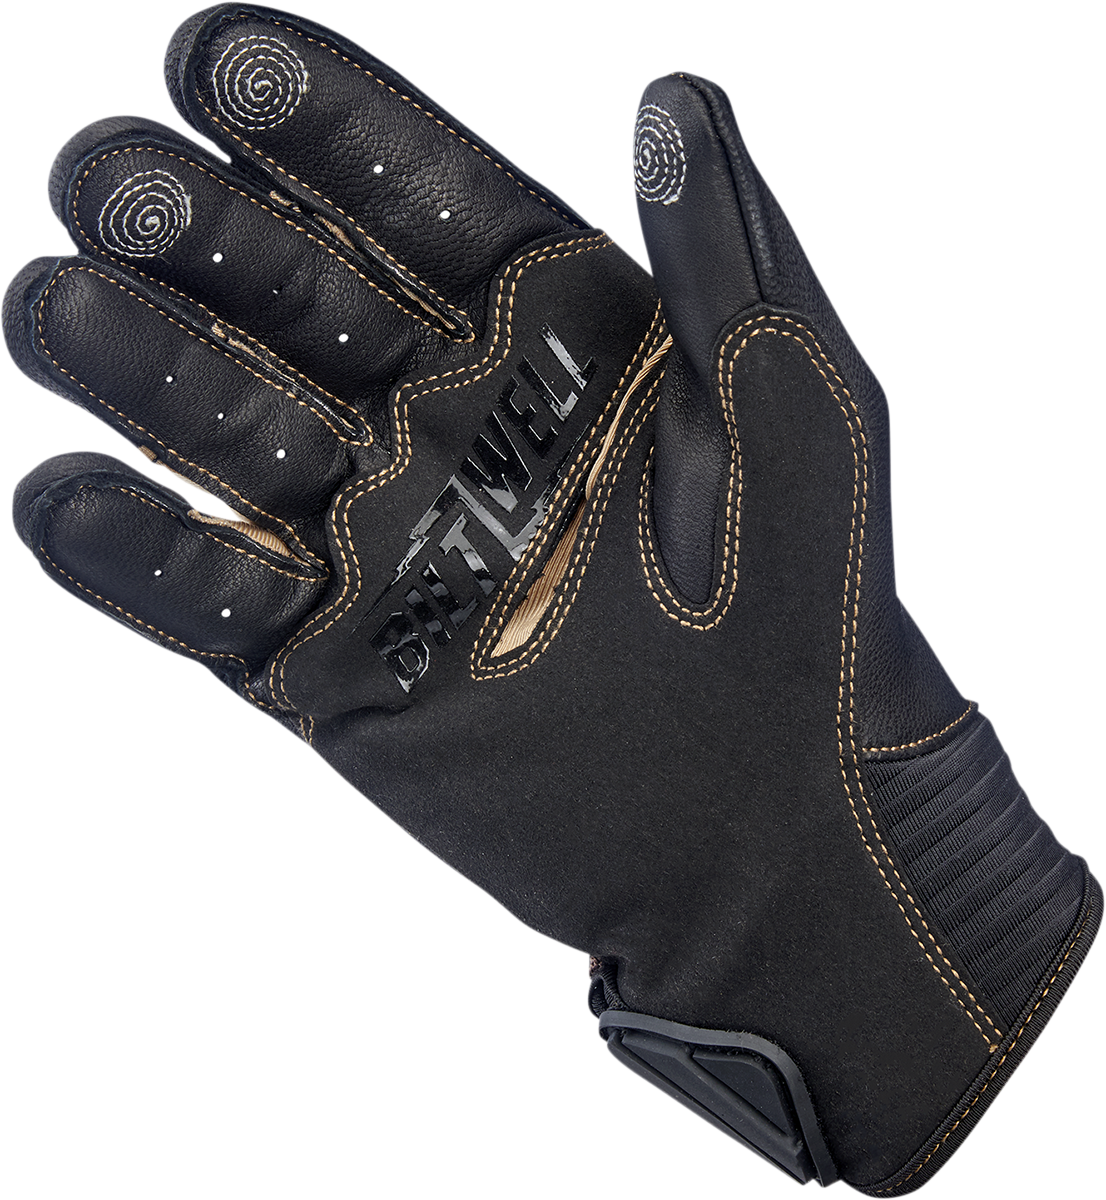 BILTWELL Bridgeport Gloves - Chocolate - 2XL 1509-0201-306